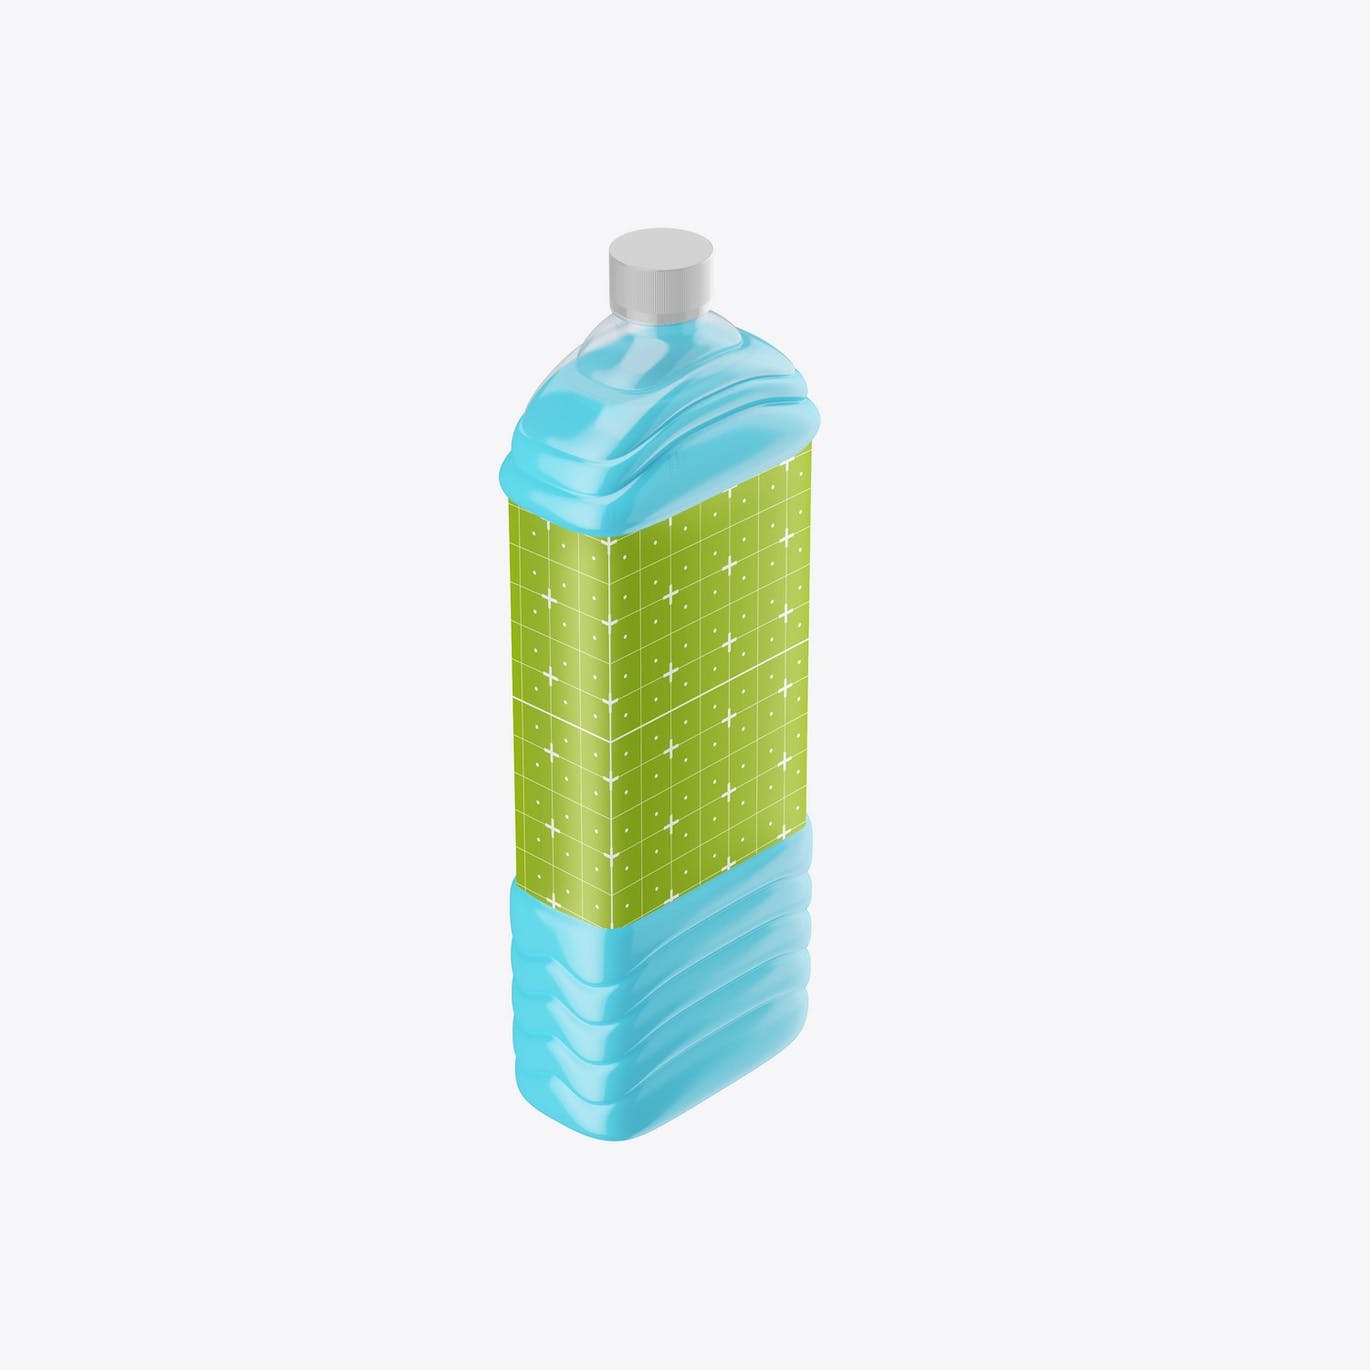 家用洗涤剂瓶包装设计样机 Home Detergent Bottle Mockup 样机素材 第2张